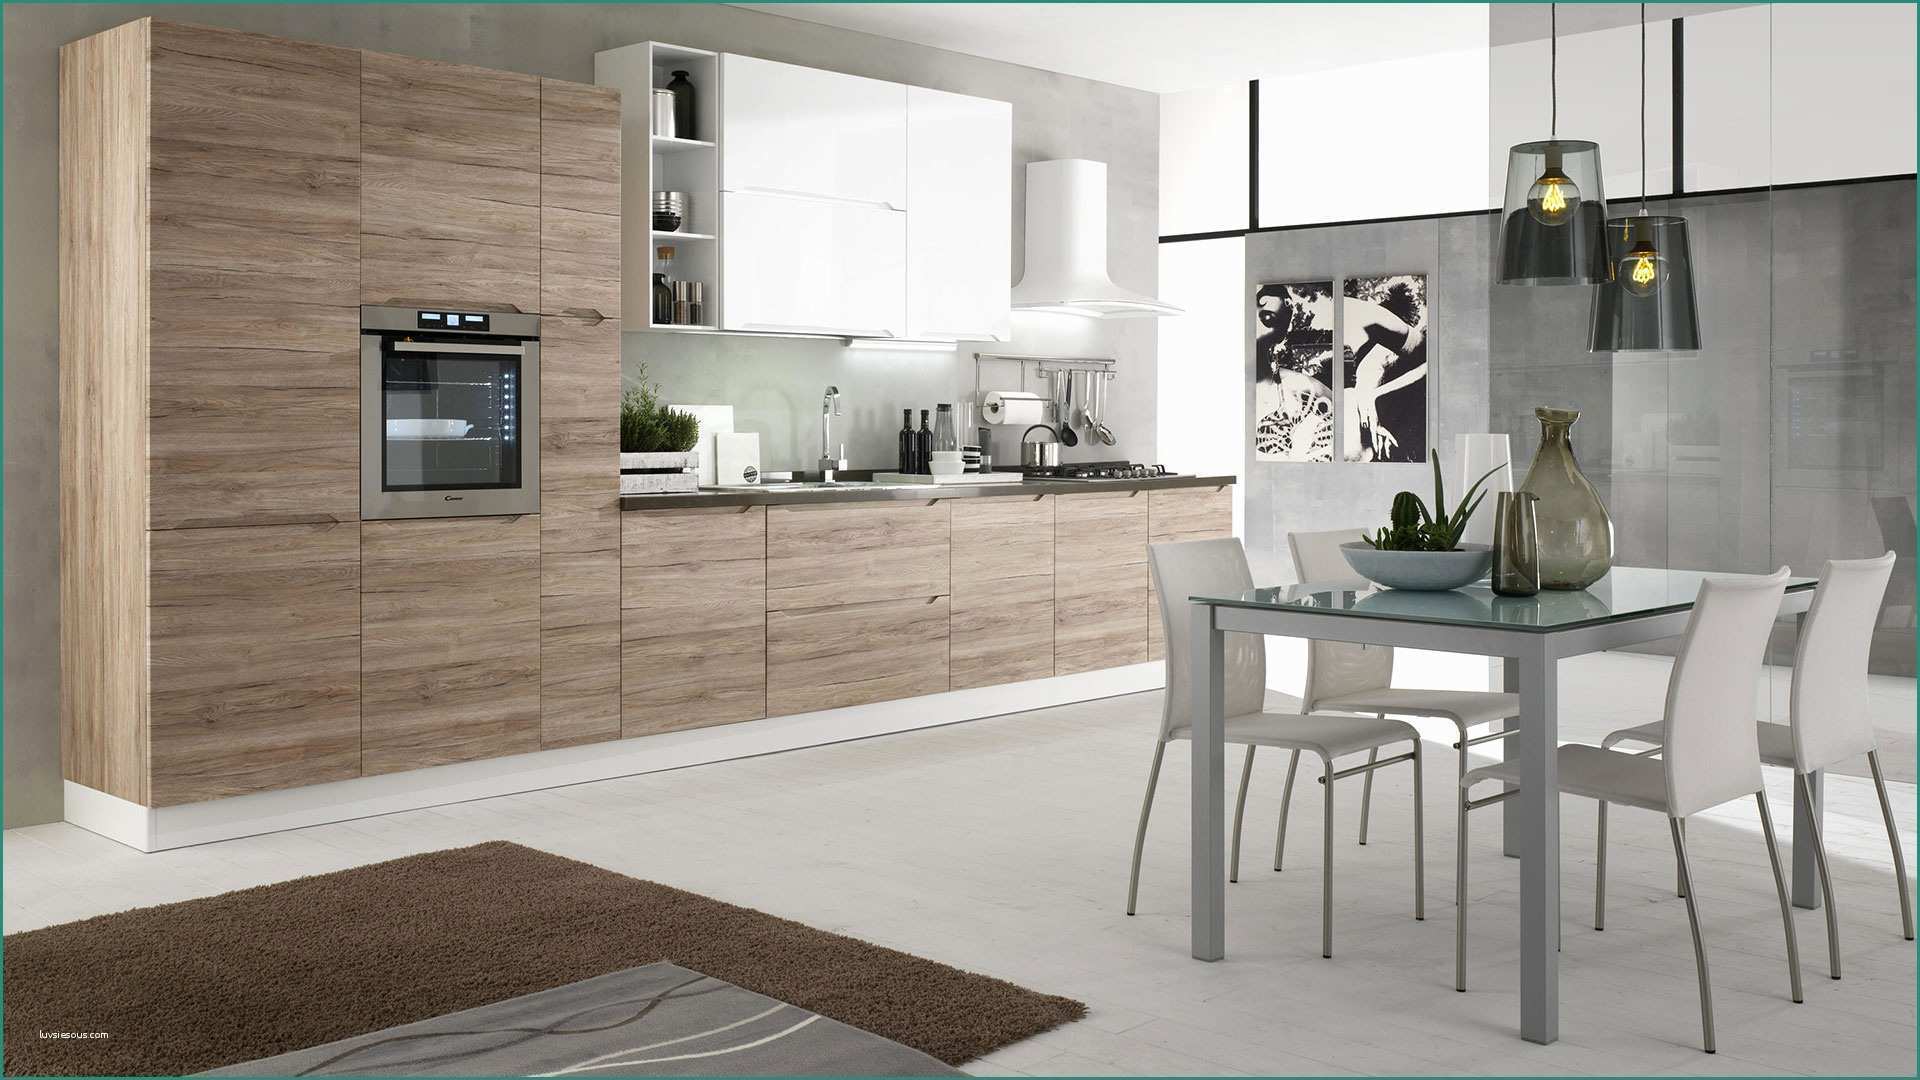 Cucine Berloni Moderne E Immagini Di Cucine Moderne Excellent soggiorno Open Space soggiorno